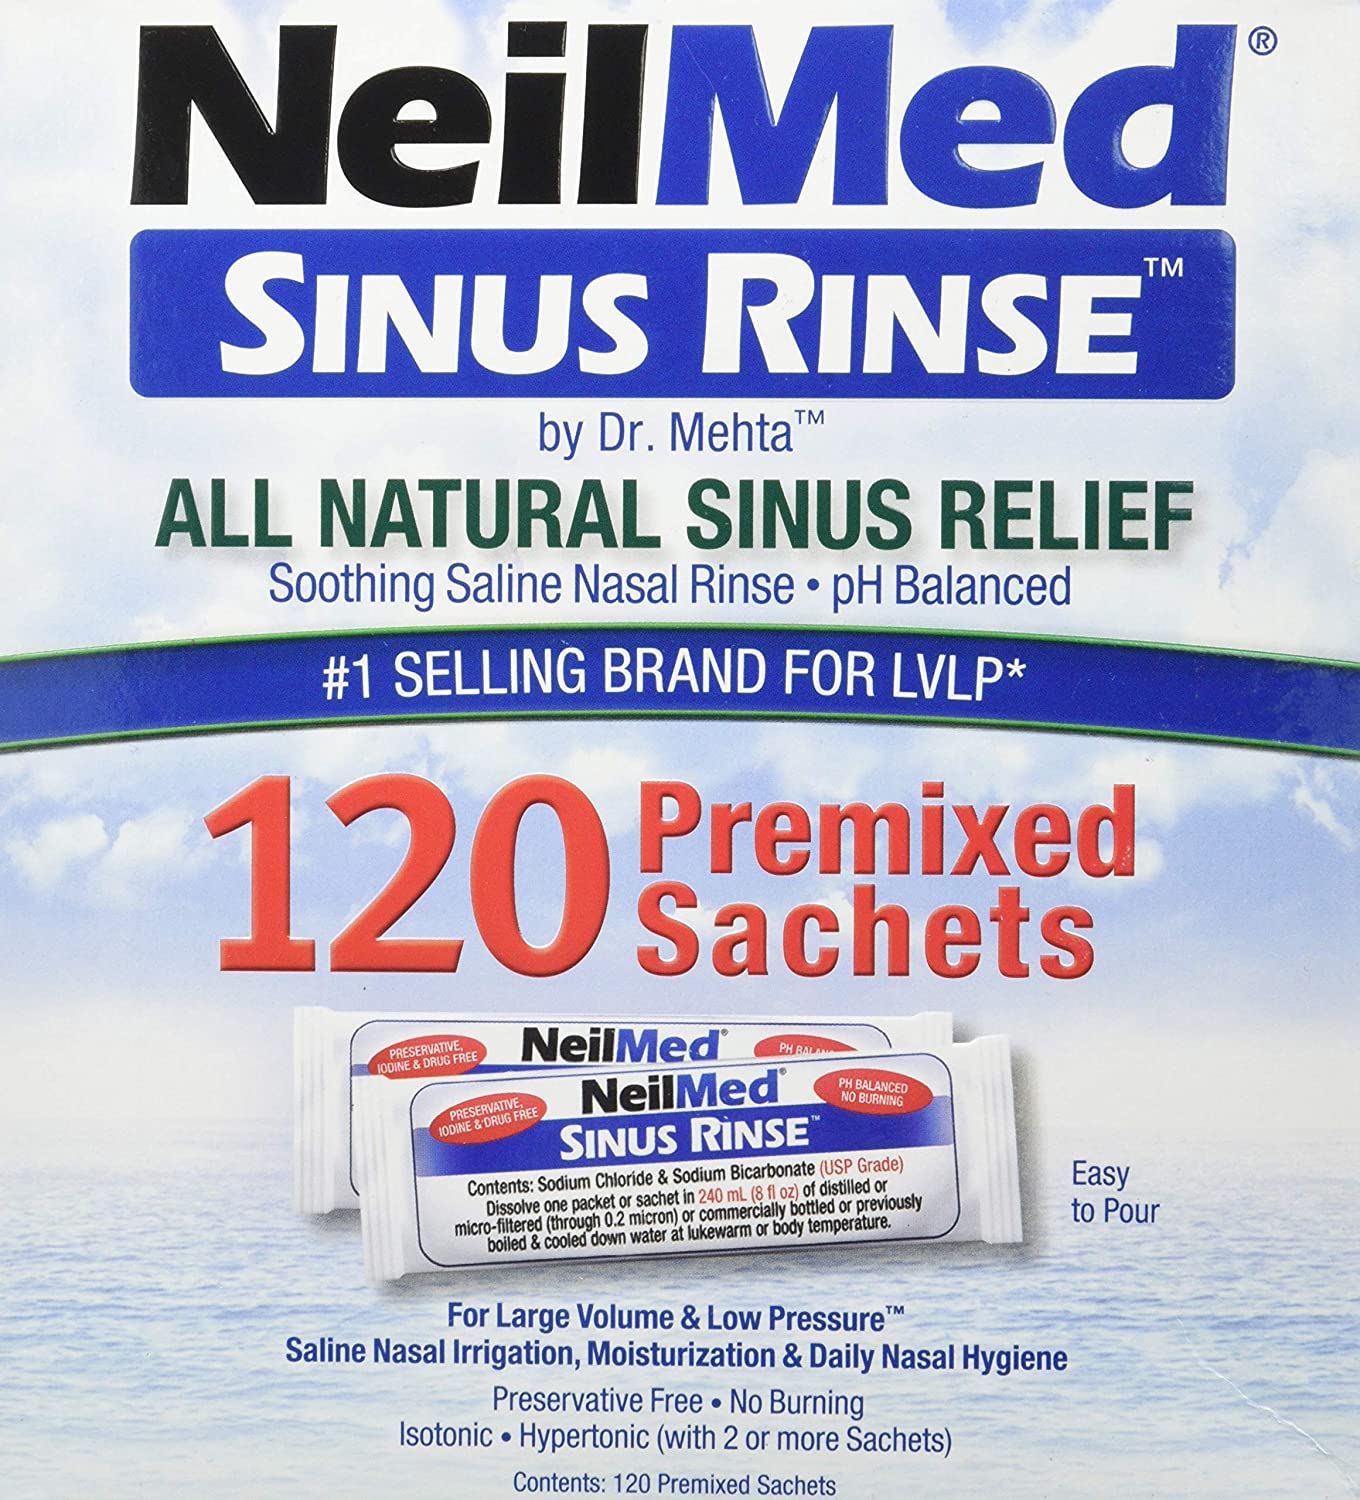 NeilMed Sinus Rinse 120 Premixed Sachets